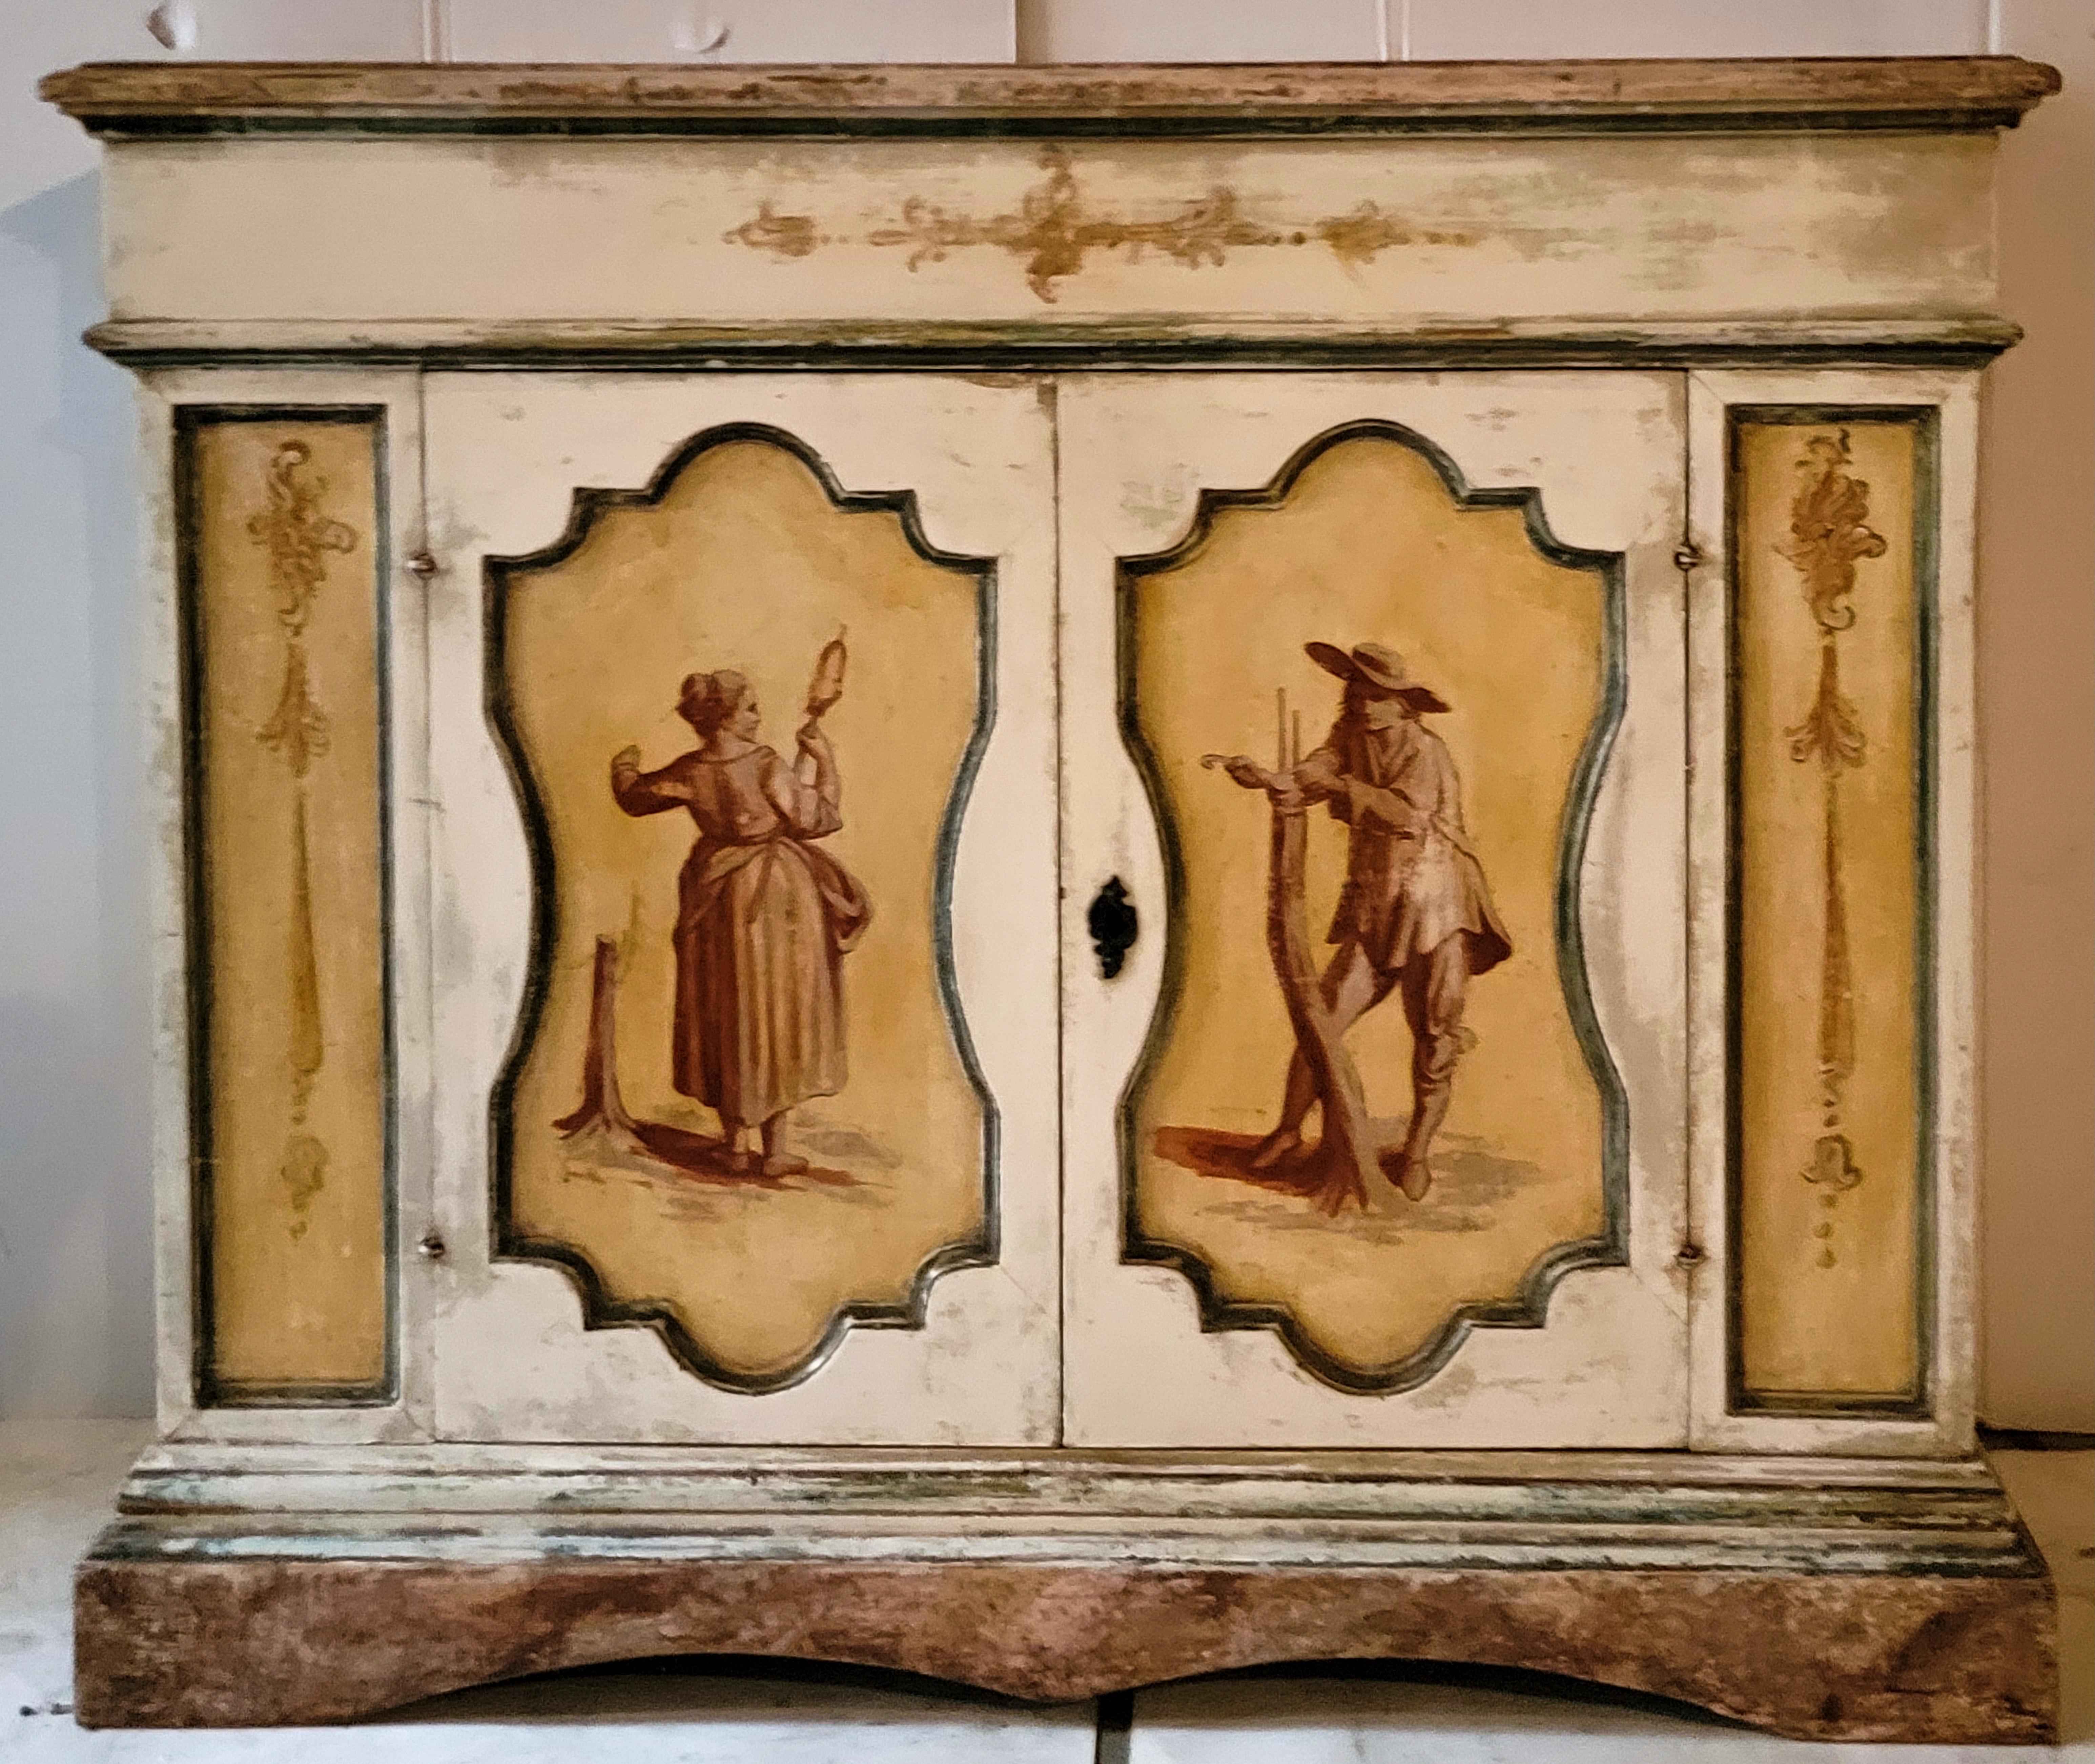 Dies ist ein handbemalter venezianischer Schrank aus dem späten 19. Er ist aus Kiefernholz und hat ein einziges Innenfach mit Papierauskleidung. Es zeigt einige altersgemäße Verschleiß, sondern hat große Patina. Die Türen zeigen eine pastorale